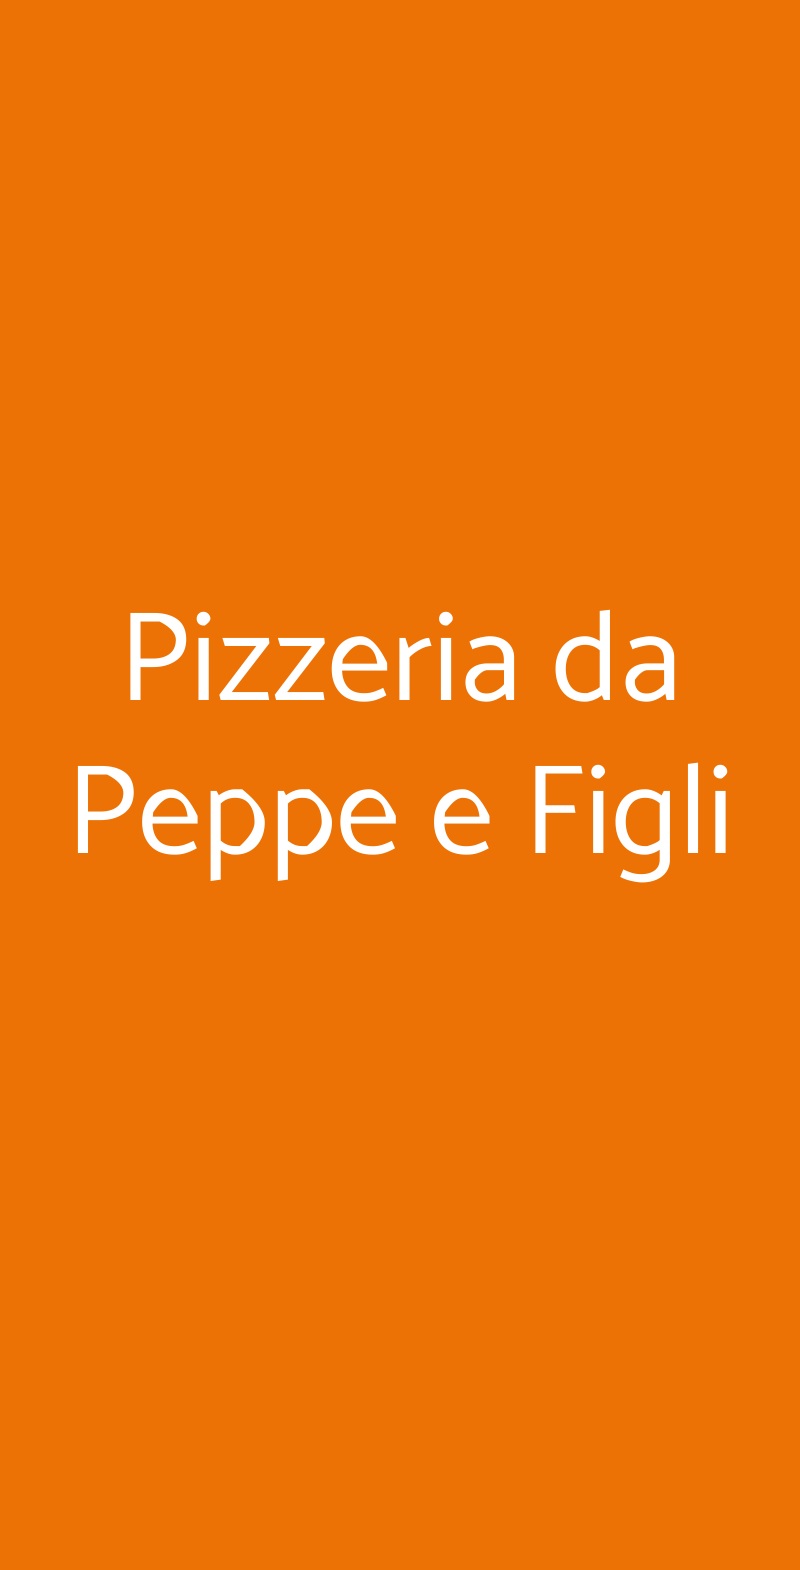 Pizzeria da Peppe e Figli Napoli menù 1 pagina